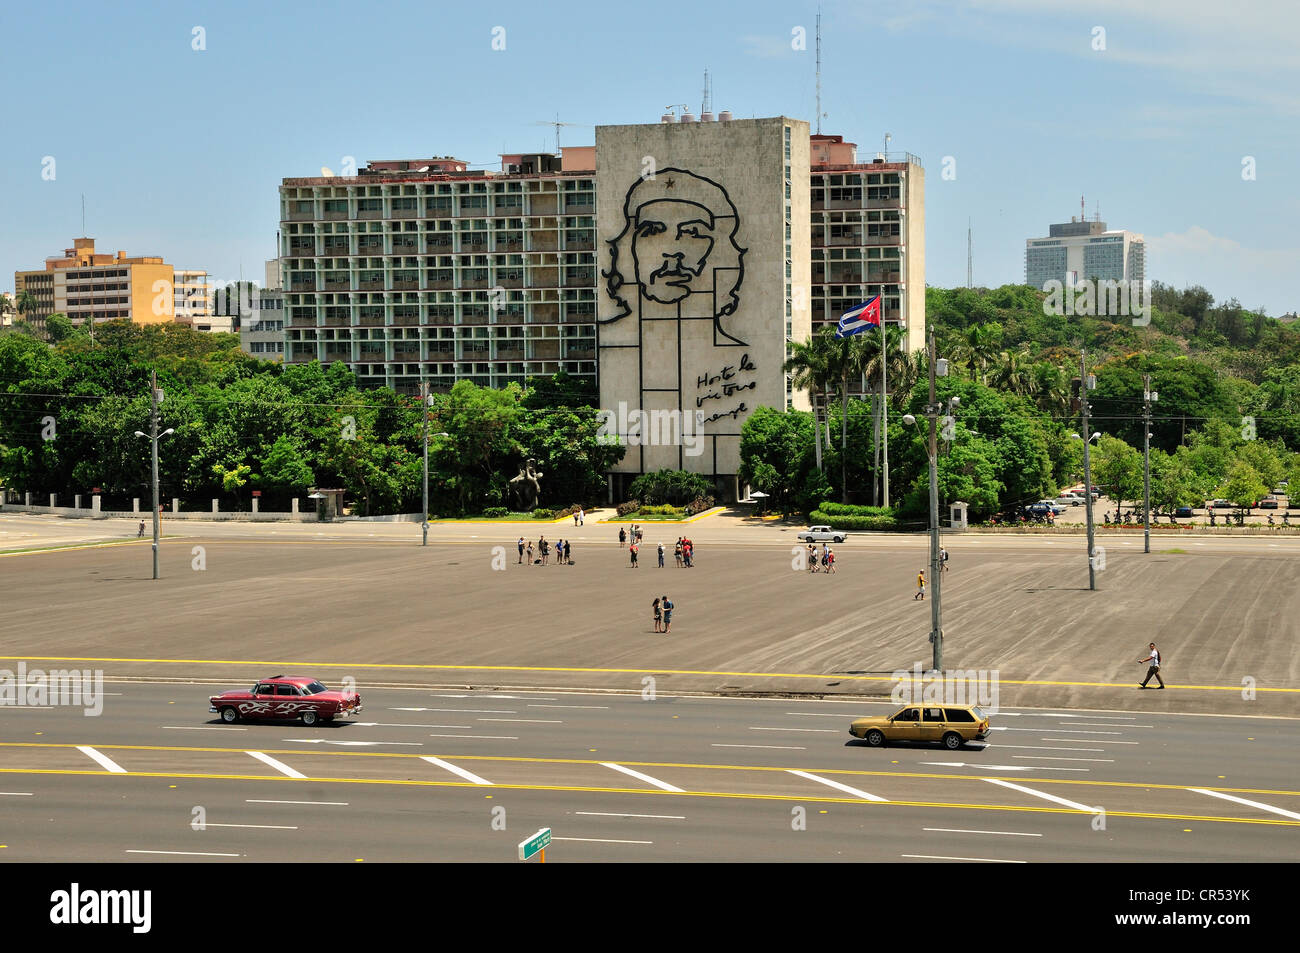 Depiction of Ernesto 'Che' Guevara on the facade of the interior ministry, Plaza de la Revolucion square, Havana, Cuba Stock Photo